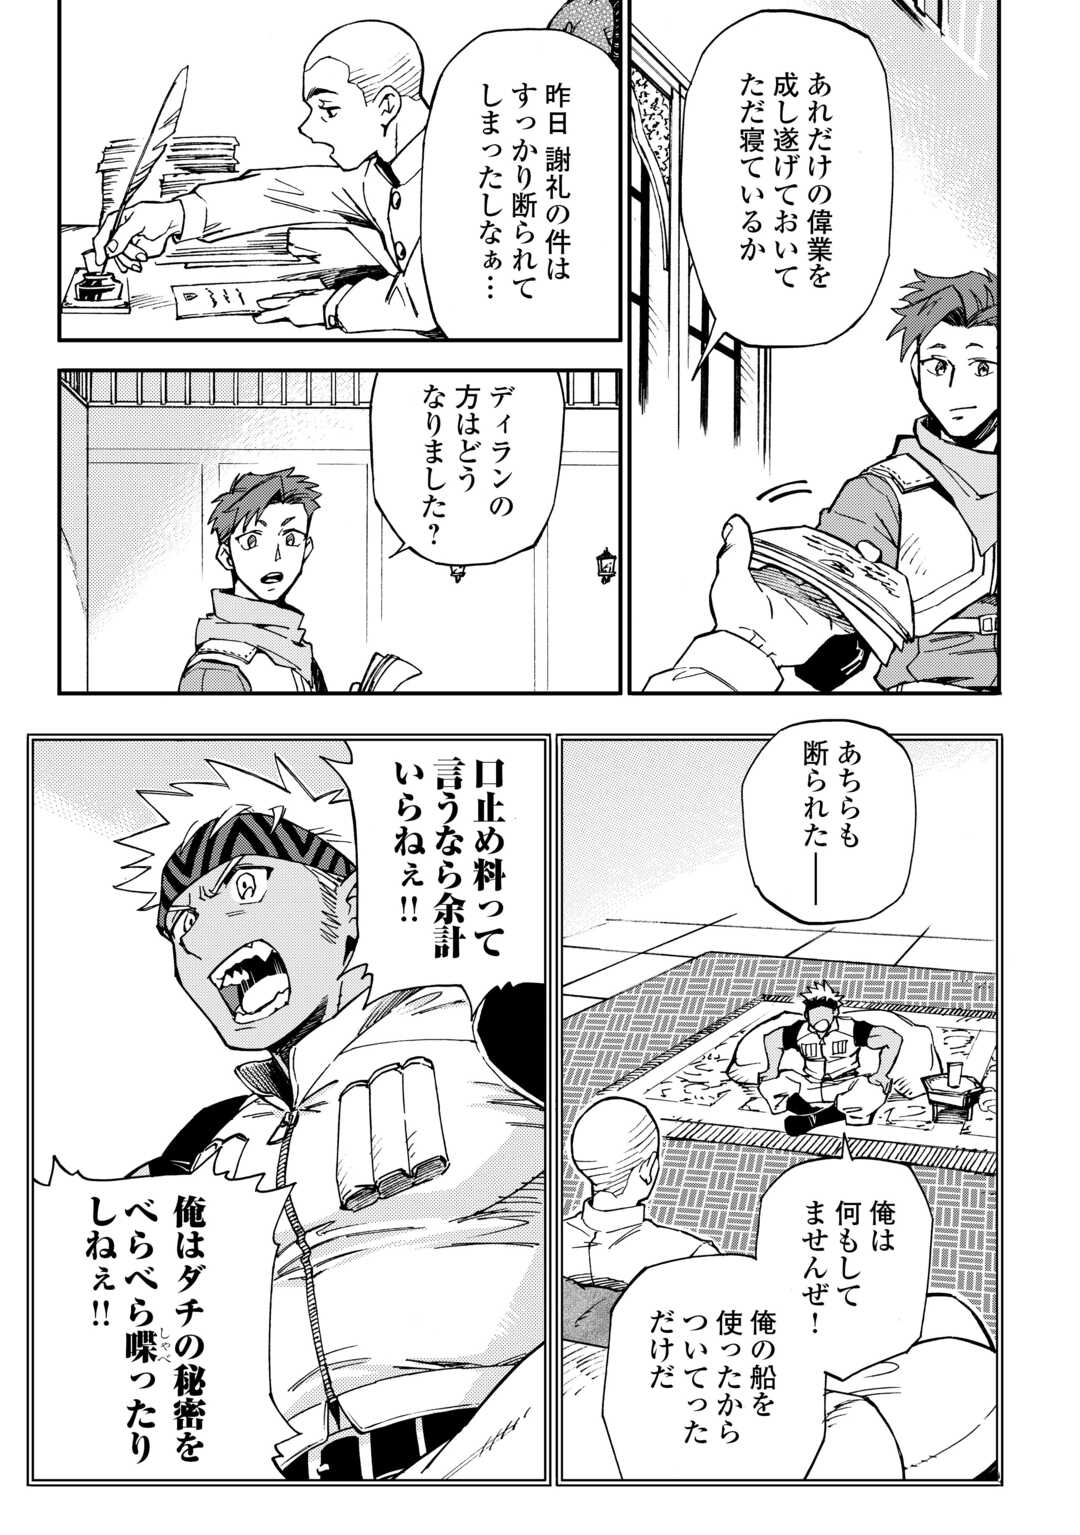 Yosoji No Ossan, Kamisama Kara Cheat Nouryoku O 9-ko Morau - Chapter 26 - Page 3